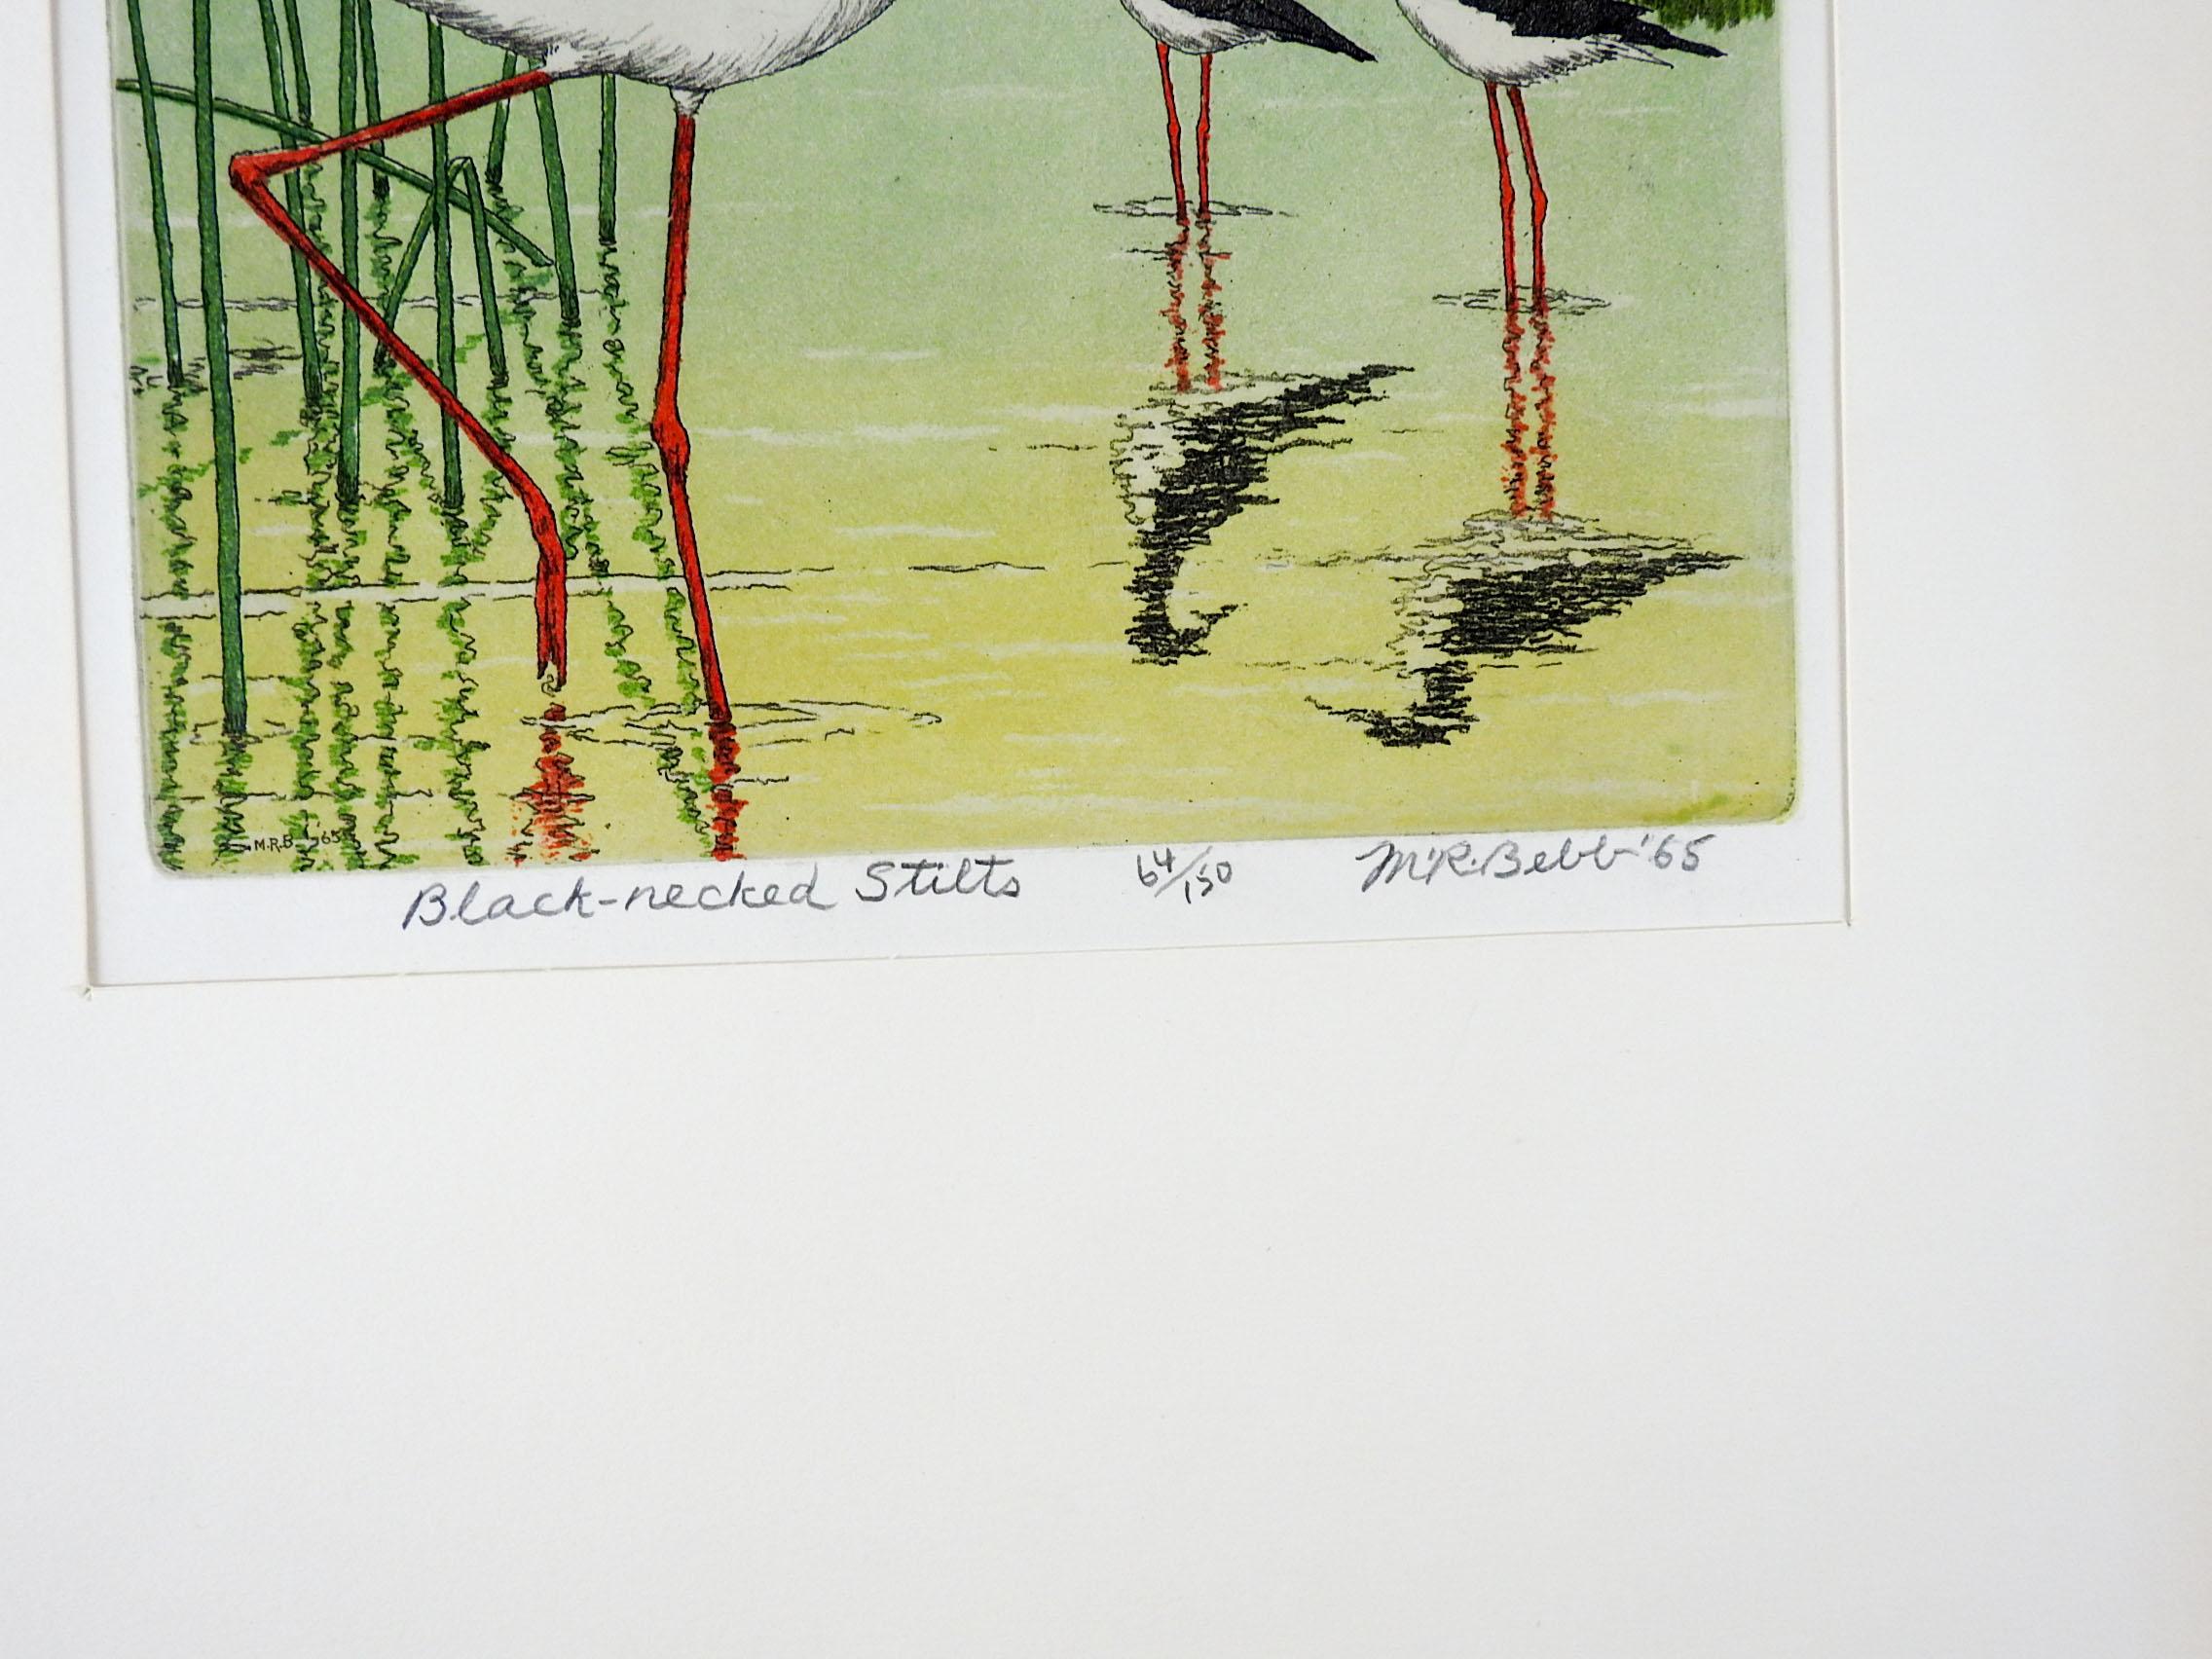 Vintage 1965 Maurice R. Bebbs (1891-1985) Farbaquatinta-Radierung auf Papier. Signiert, betitelt Schwarzhalsstelzen, nummeriert 9/15 artist proof in Bleistift am unteren Rand. Ungerahmt, in einem gefalteten Passepartout aus Karton, Öffnungsgröße